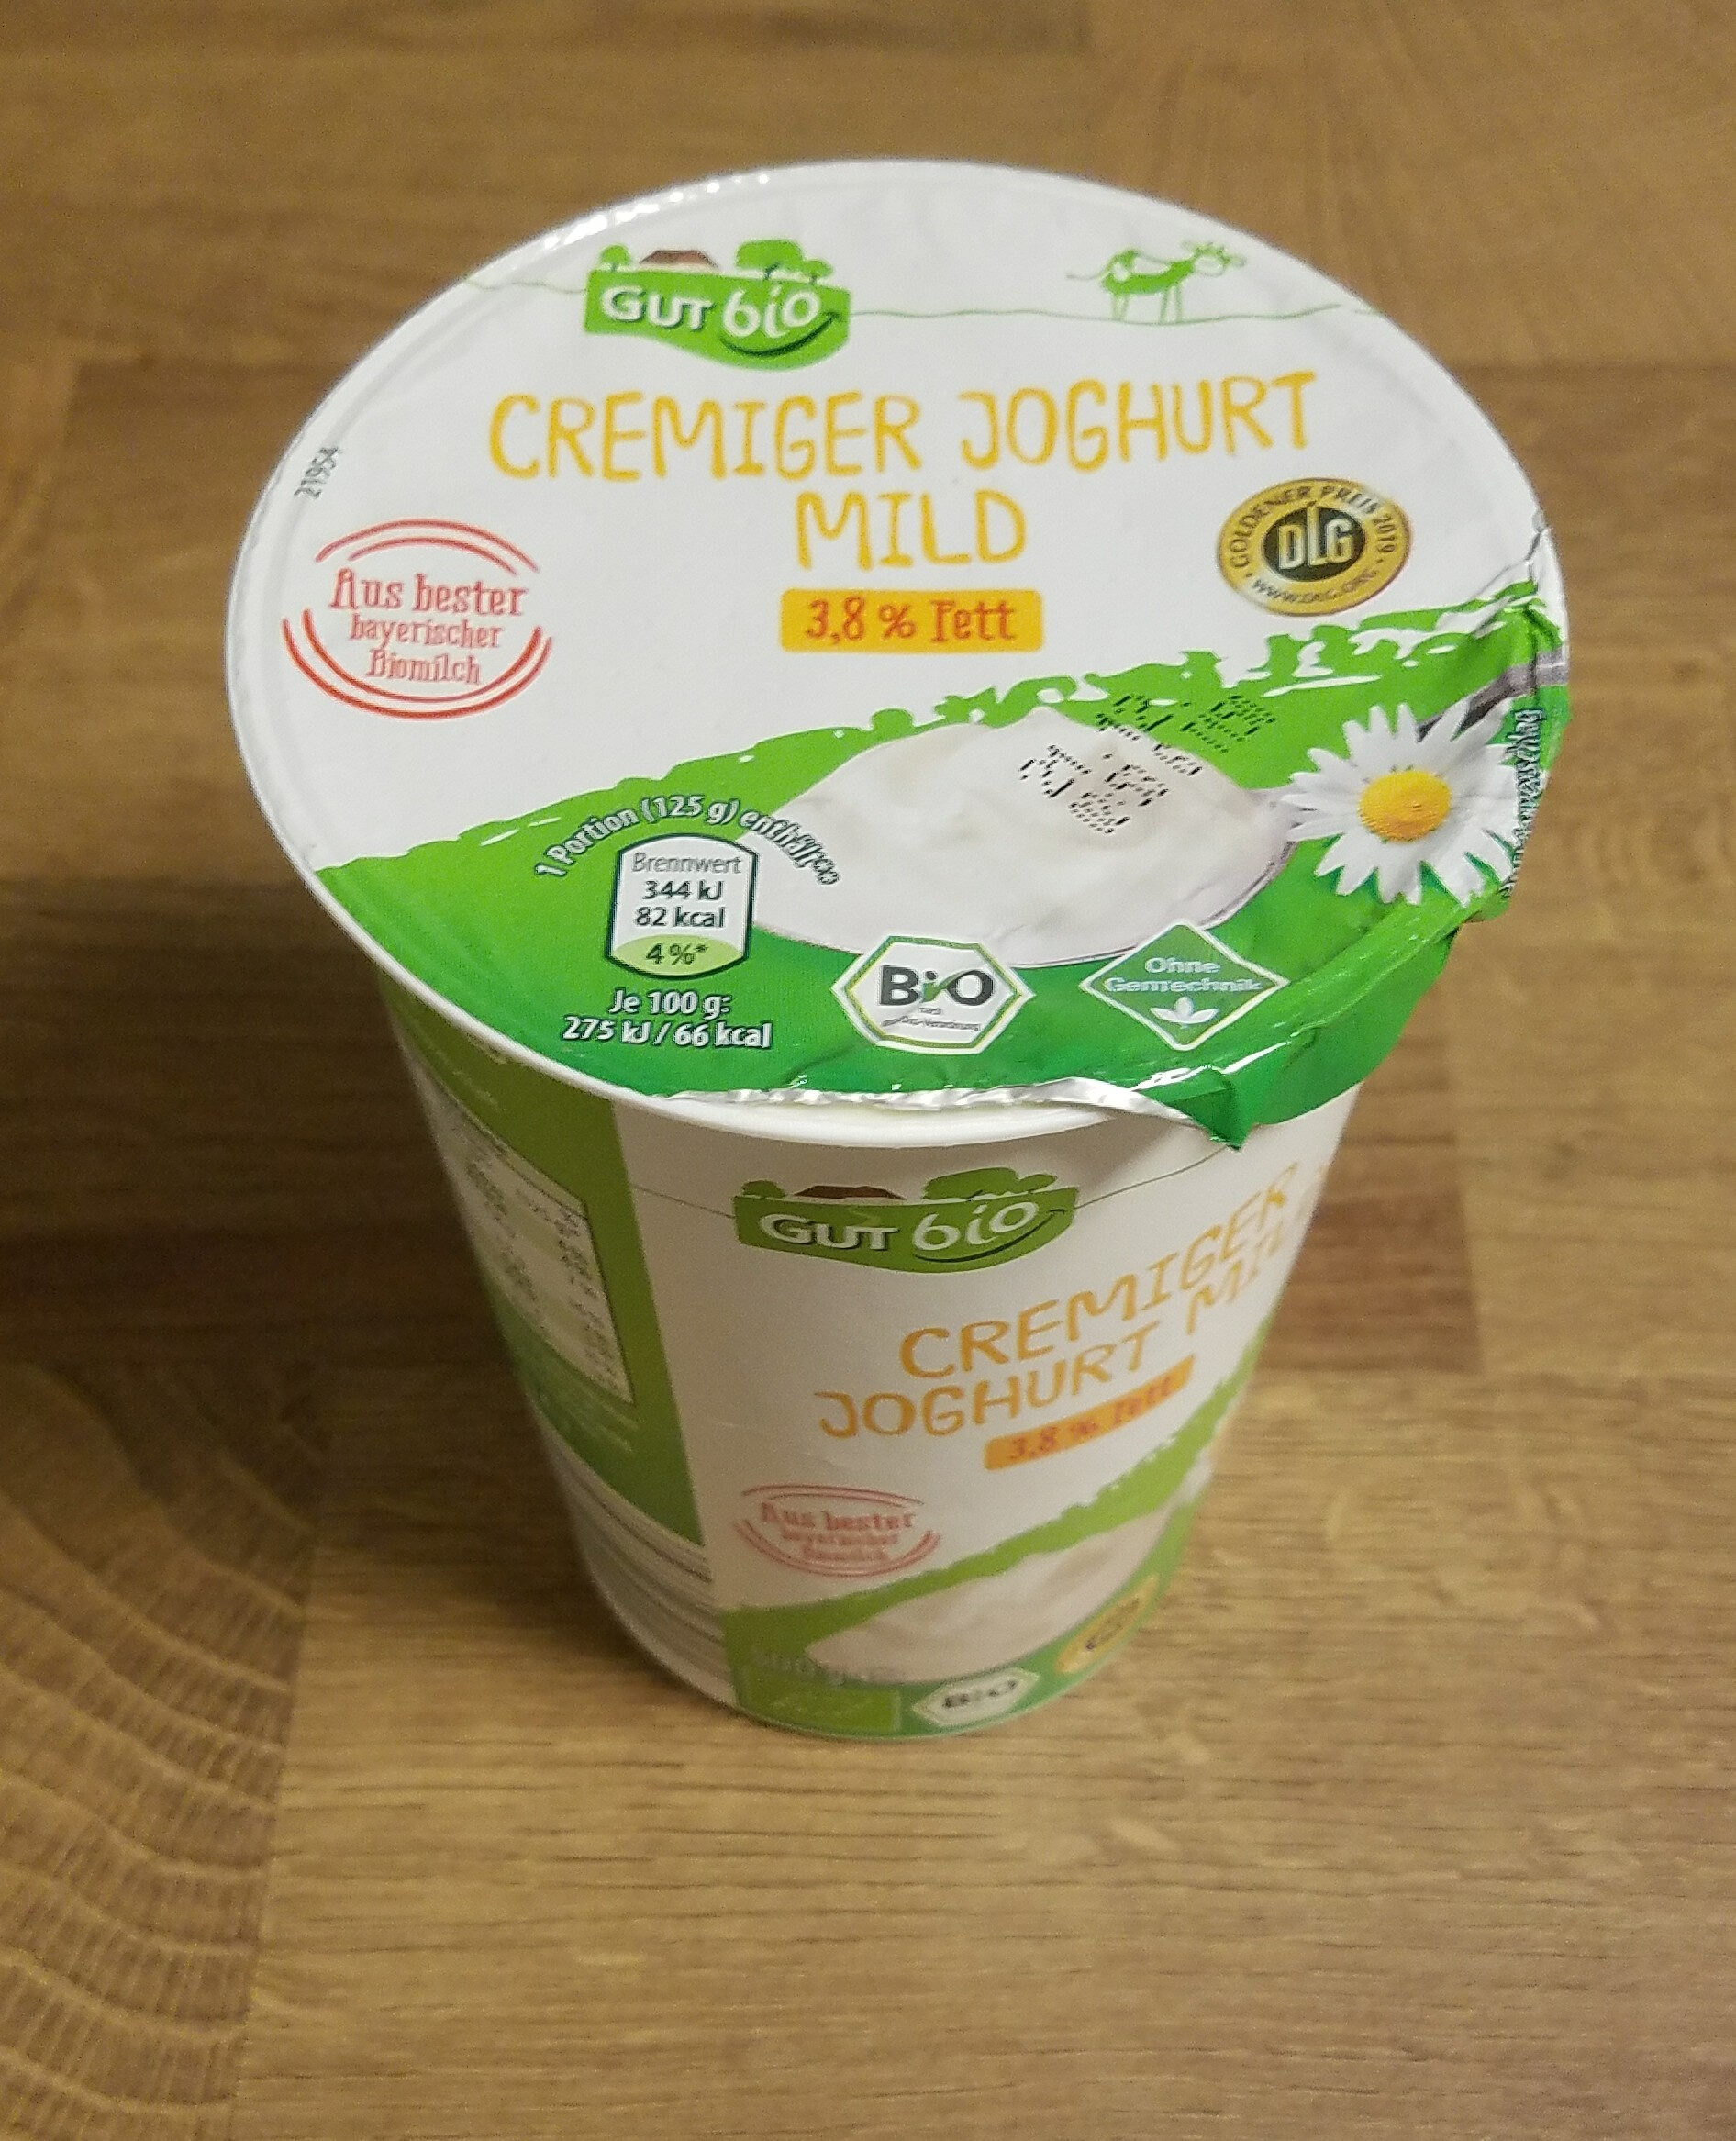 Cremiger Joghurt Mild 3,8% Fett - Produkt